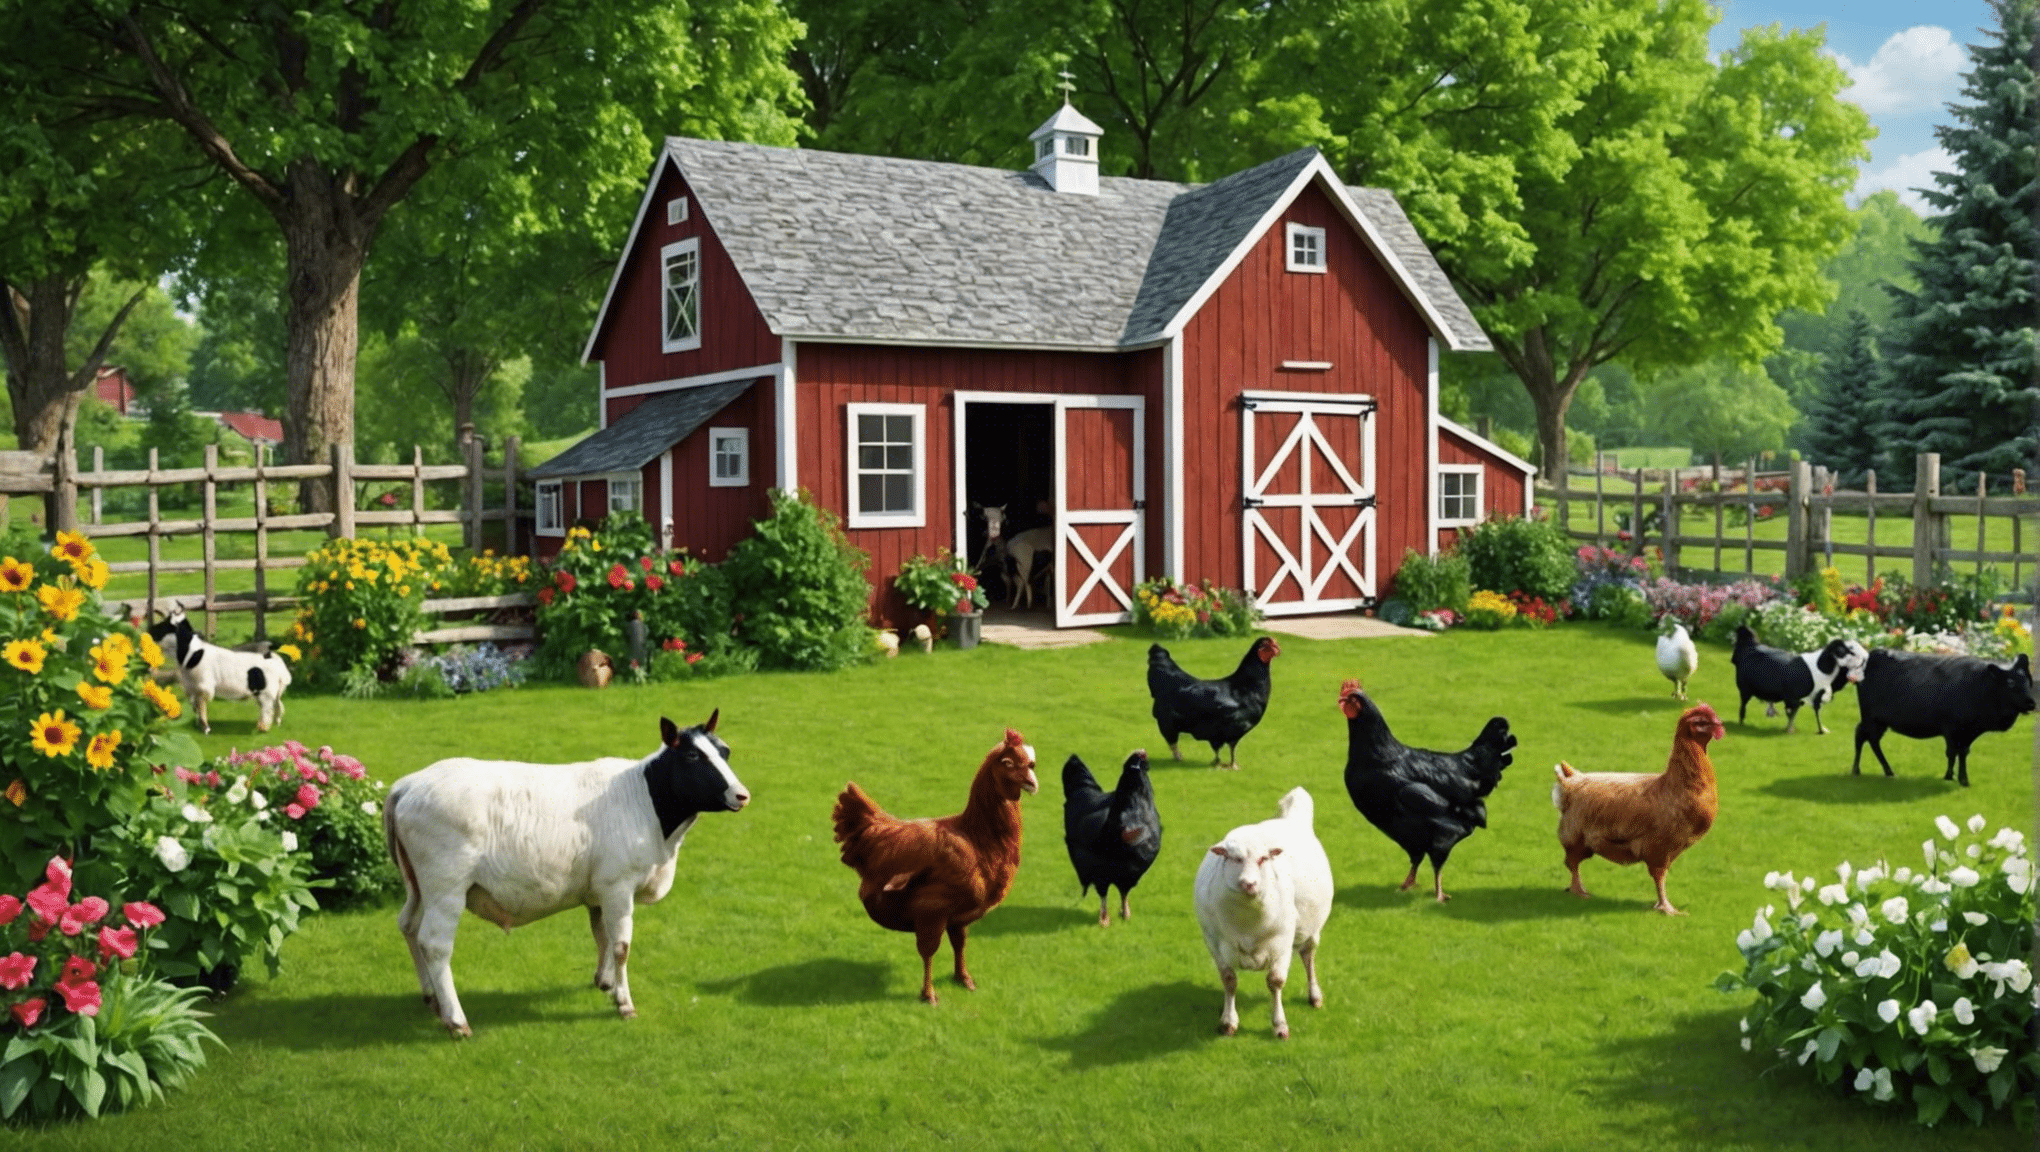 scopri i vantaggi di avere animali da fattoria nel cortile per la tua casa e la tua famiglia. impara come allevare, prenderti cura e goderti gli animali della fattoria nel tuo giardino.